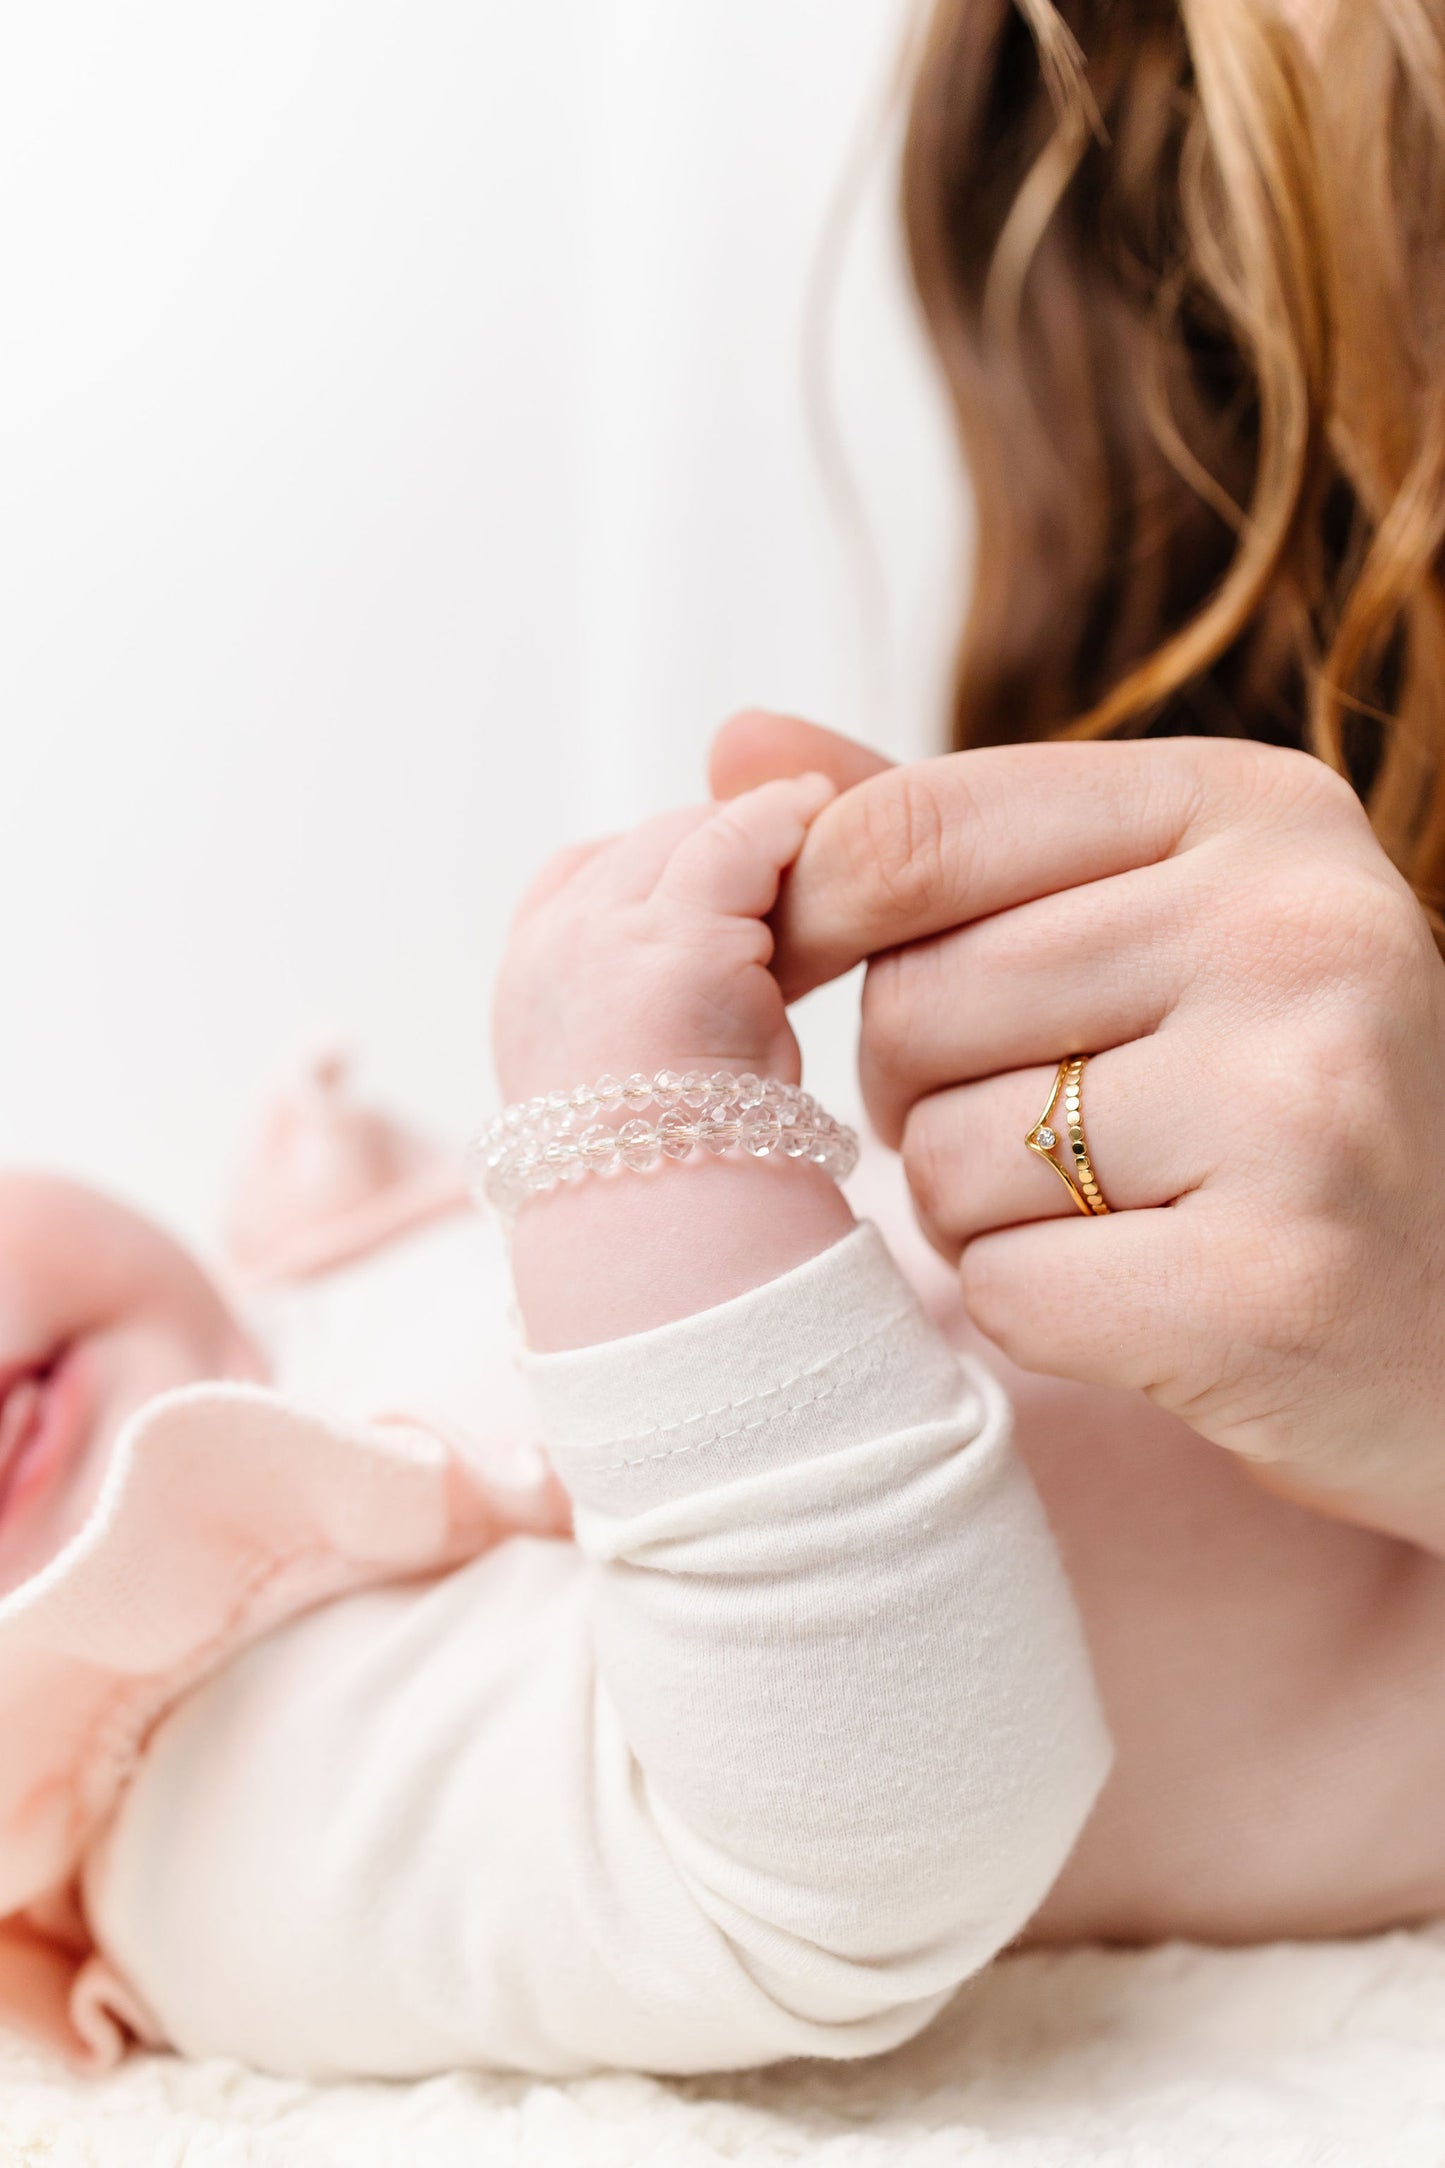 Bubbly Baby Bracelet (6MM beads)